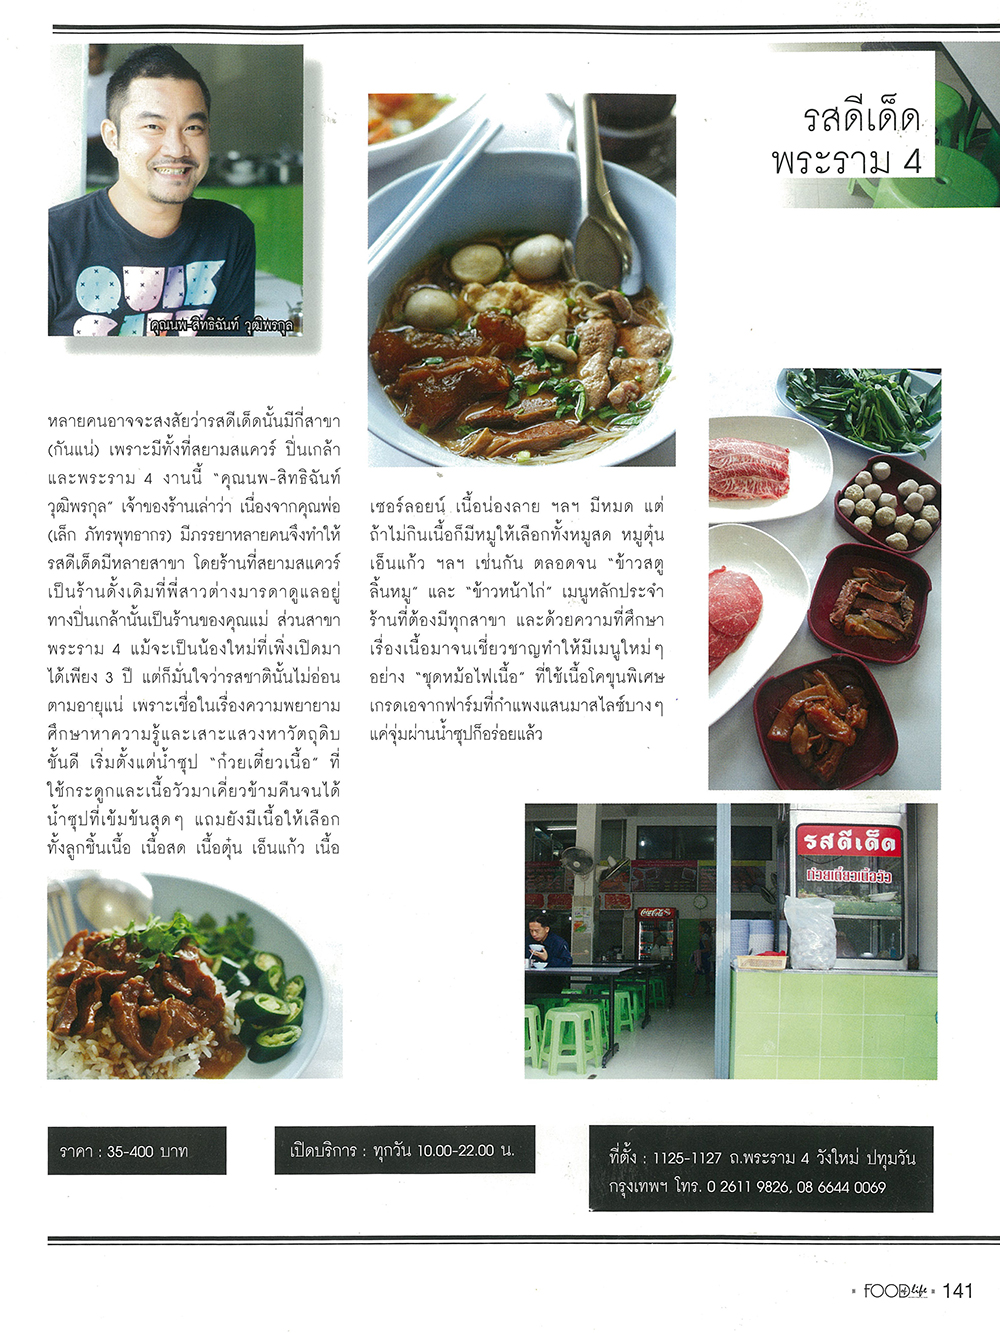 生活中的食品“暹罗广场，拉玛4酷味连锁店”